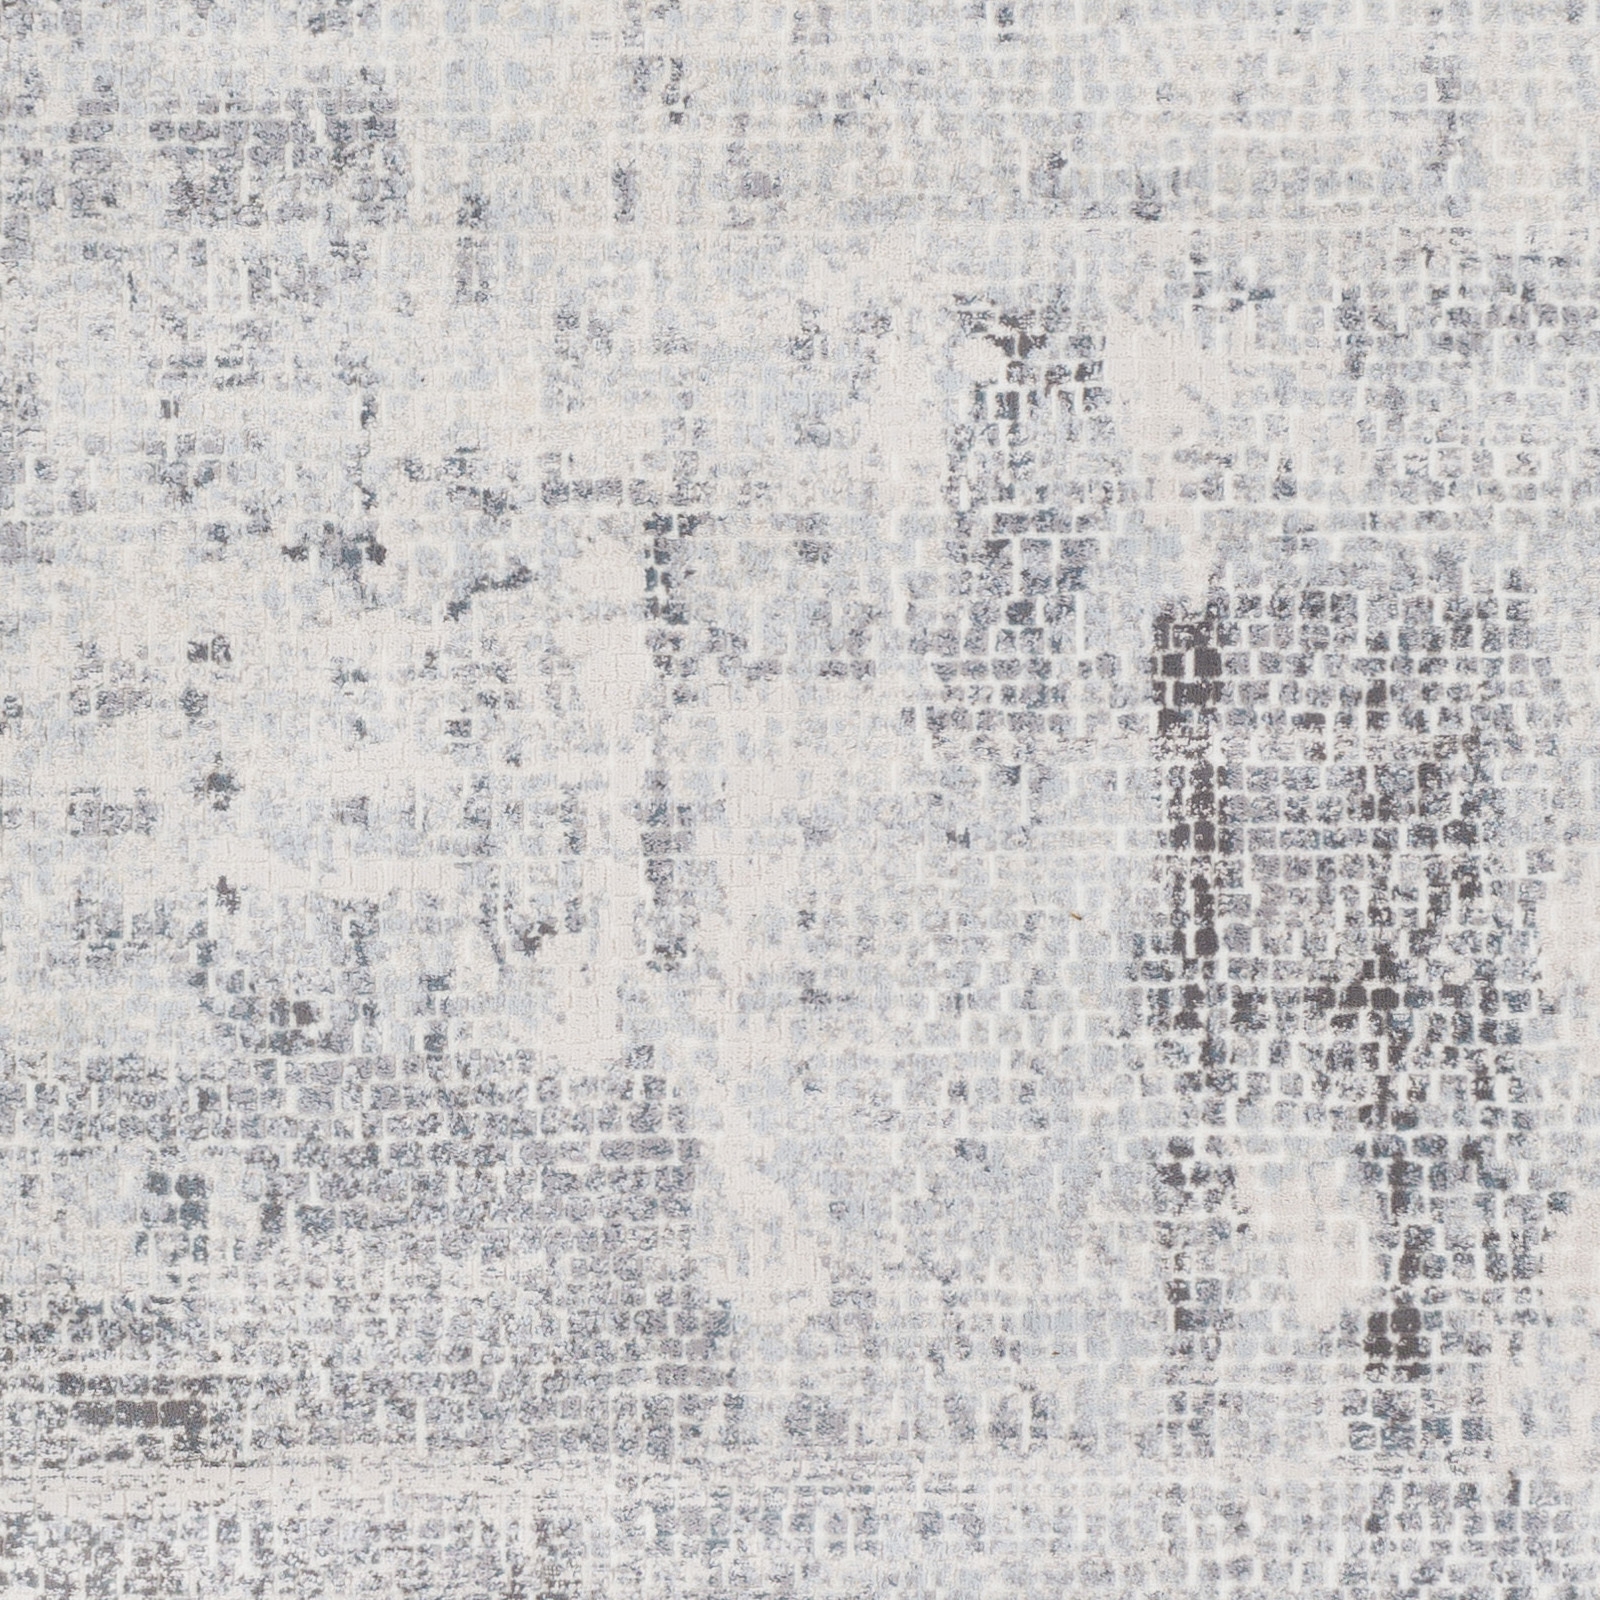 Genesis Rug, Pale Blue, 7'10" x 10'3" - Image 1